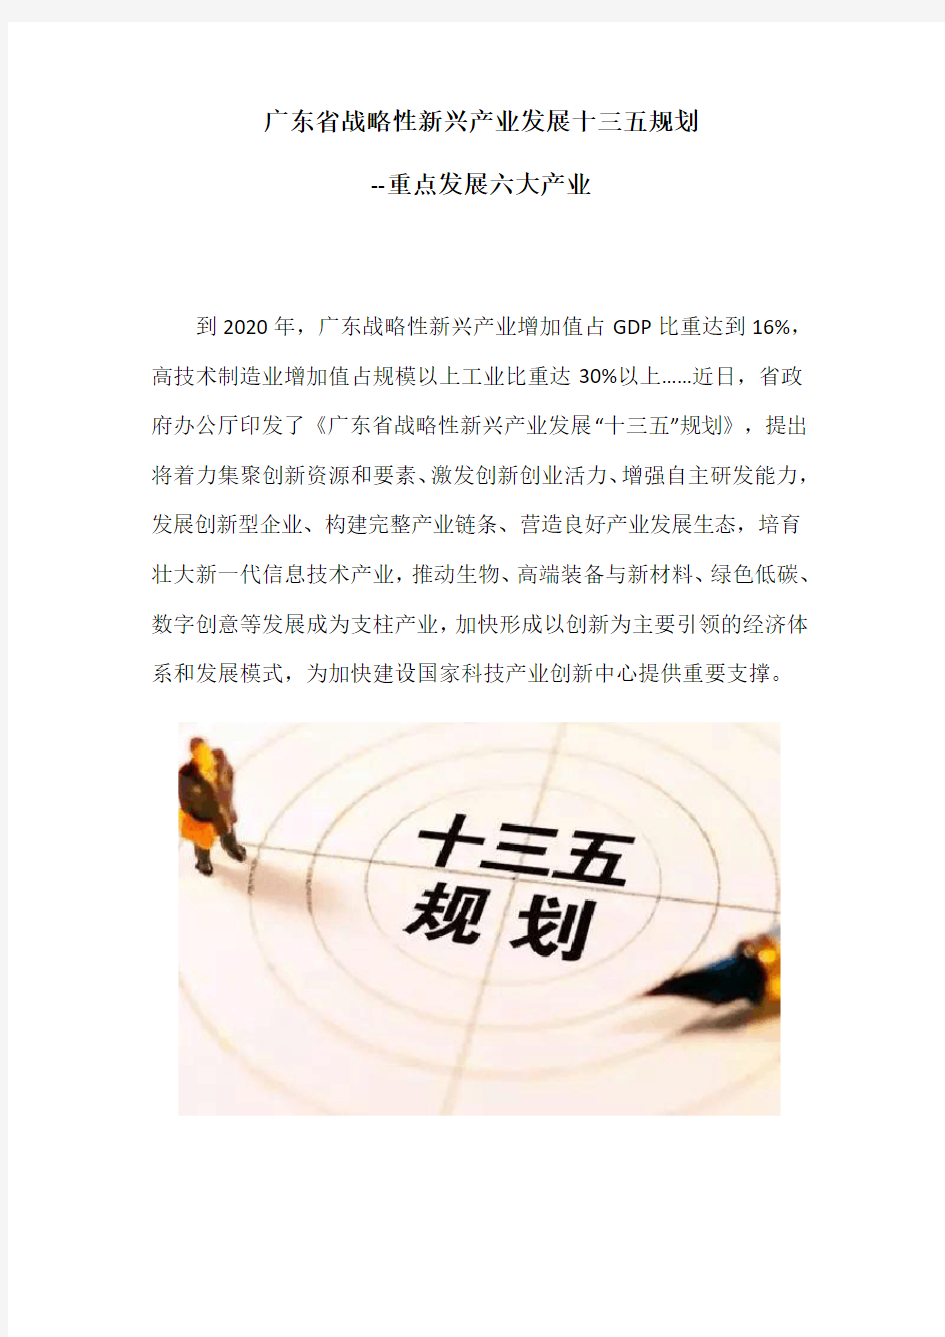 广东省战略性新兴产业发展十三五规划-重点发展六大产业